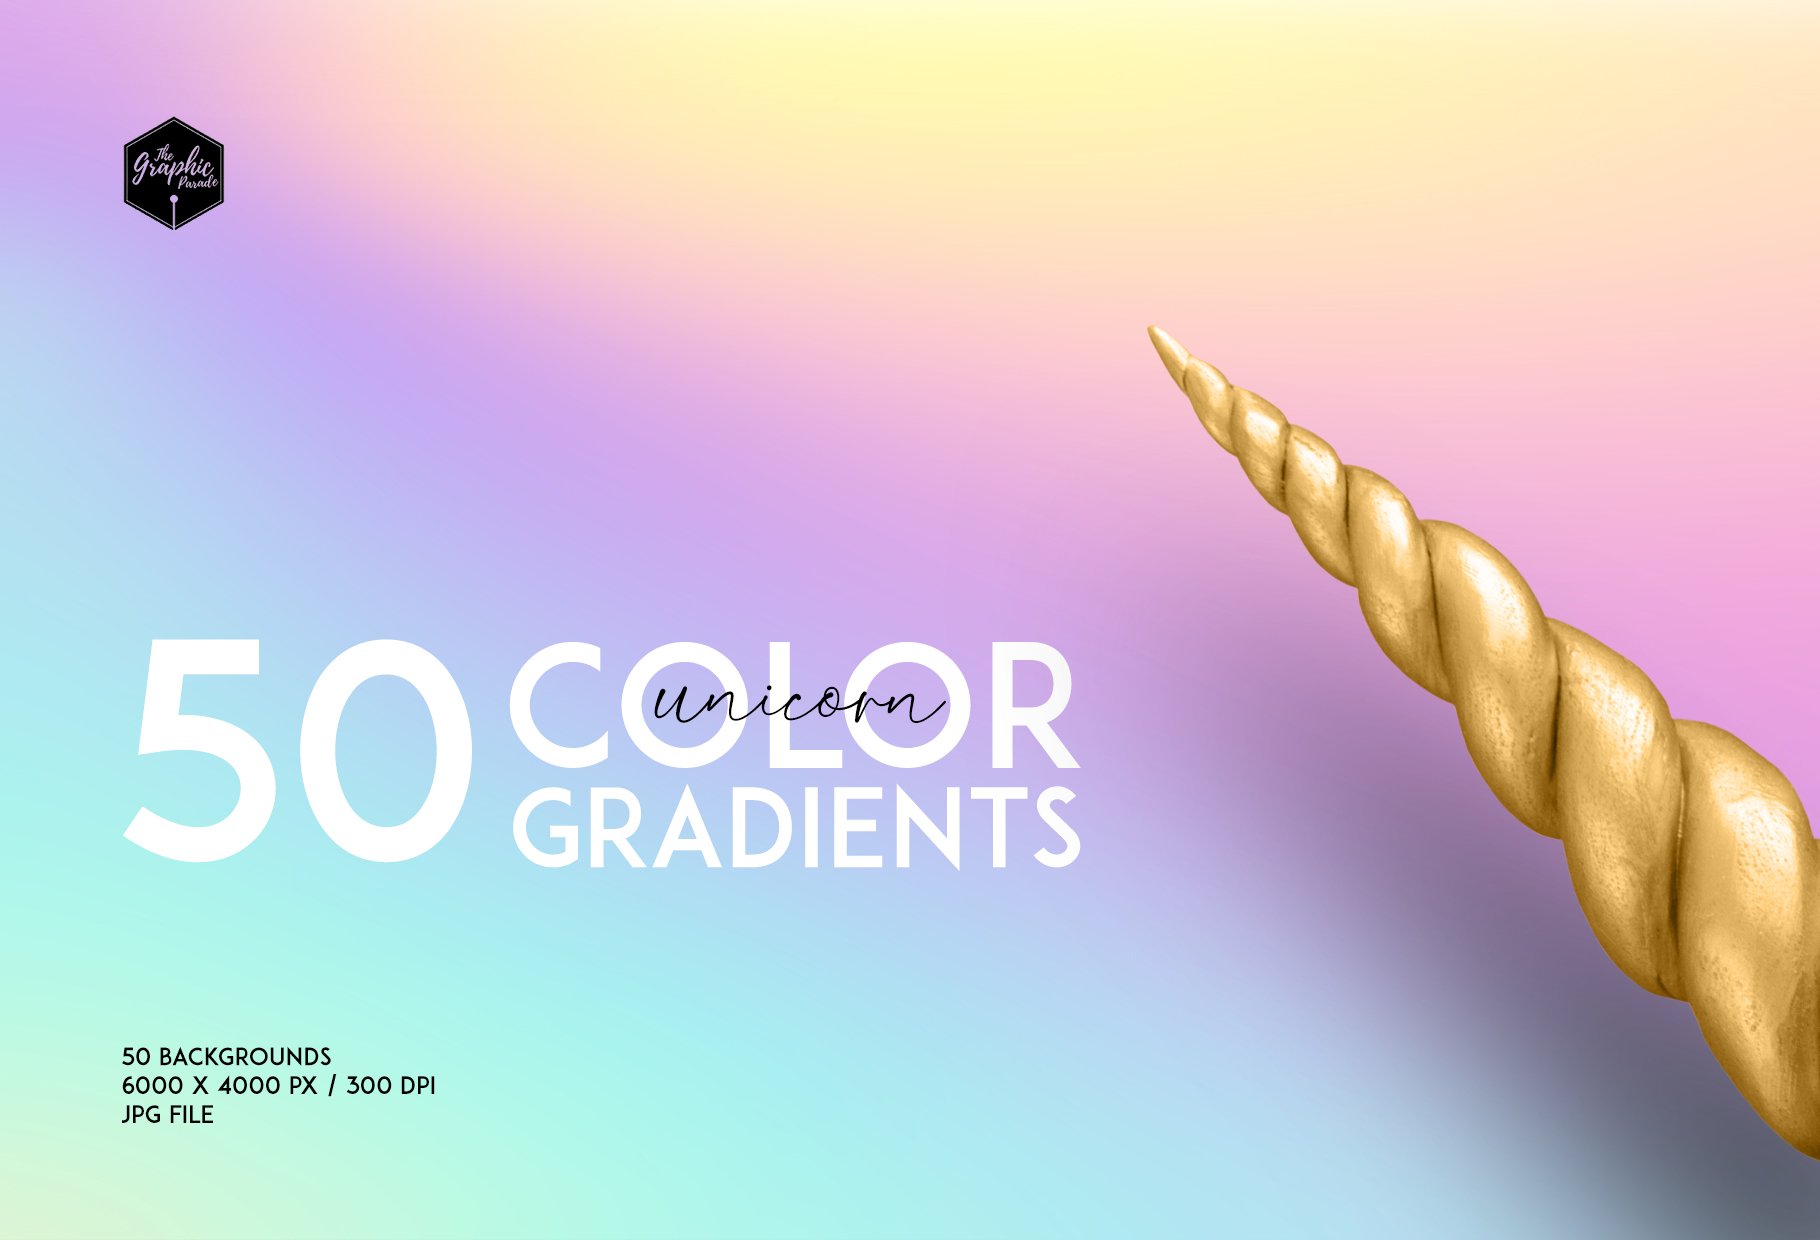 50 rainbow gradients cover image.